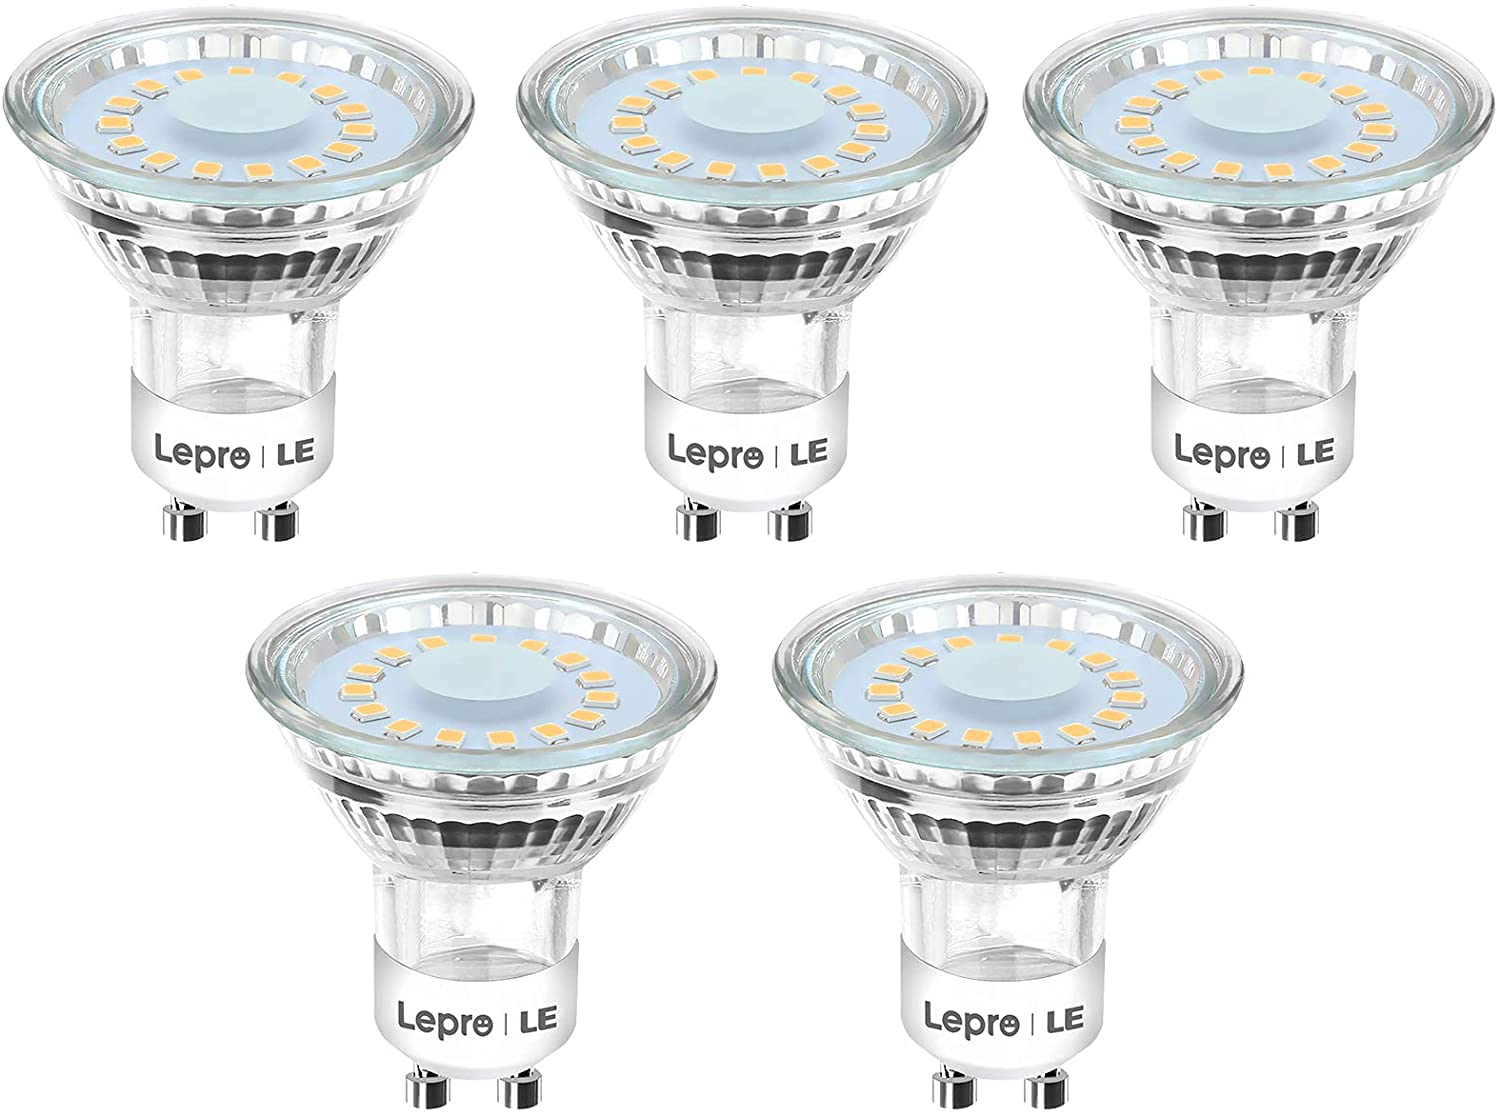 Lepro GU10 LED Lampe